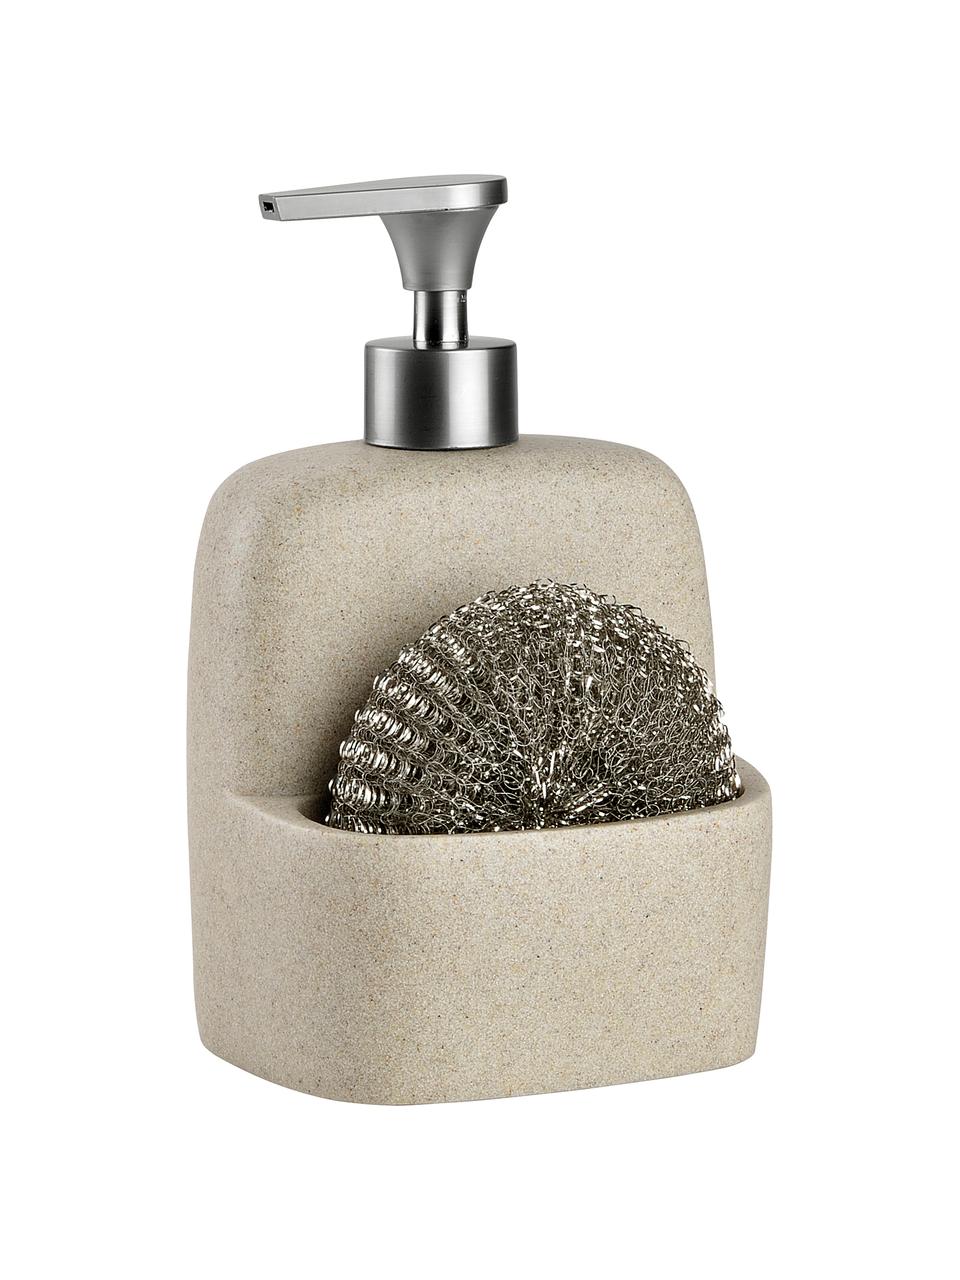 Zeepdispenserset Zand met spons, 2-delig, Beige, zilverkleurig, B 11 x H 19 cm